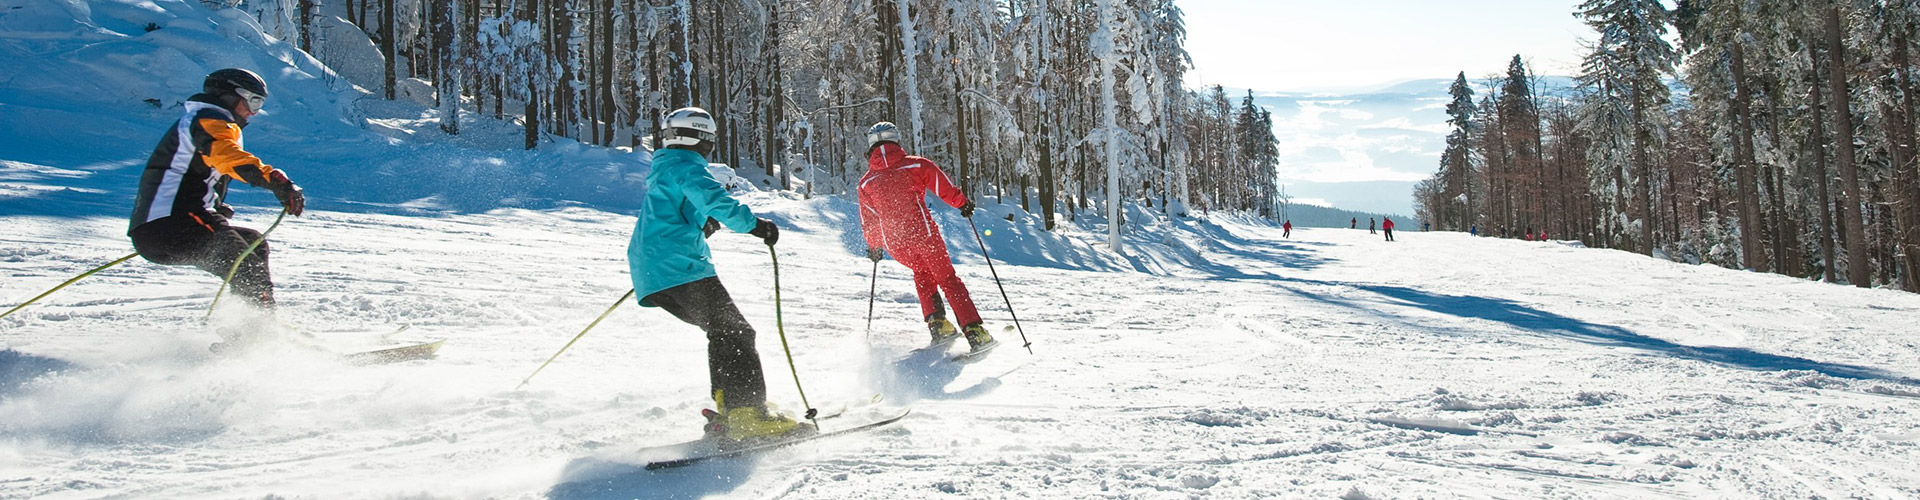 Skiareál Hochficht